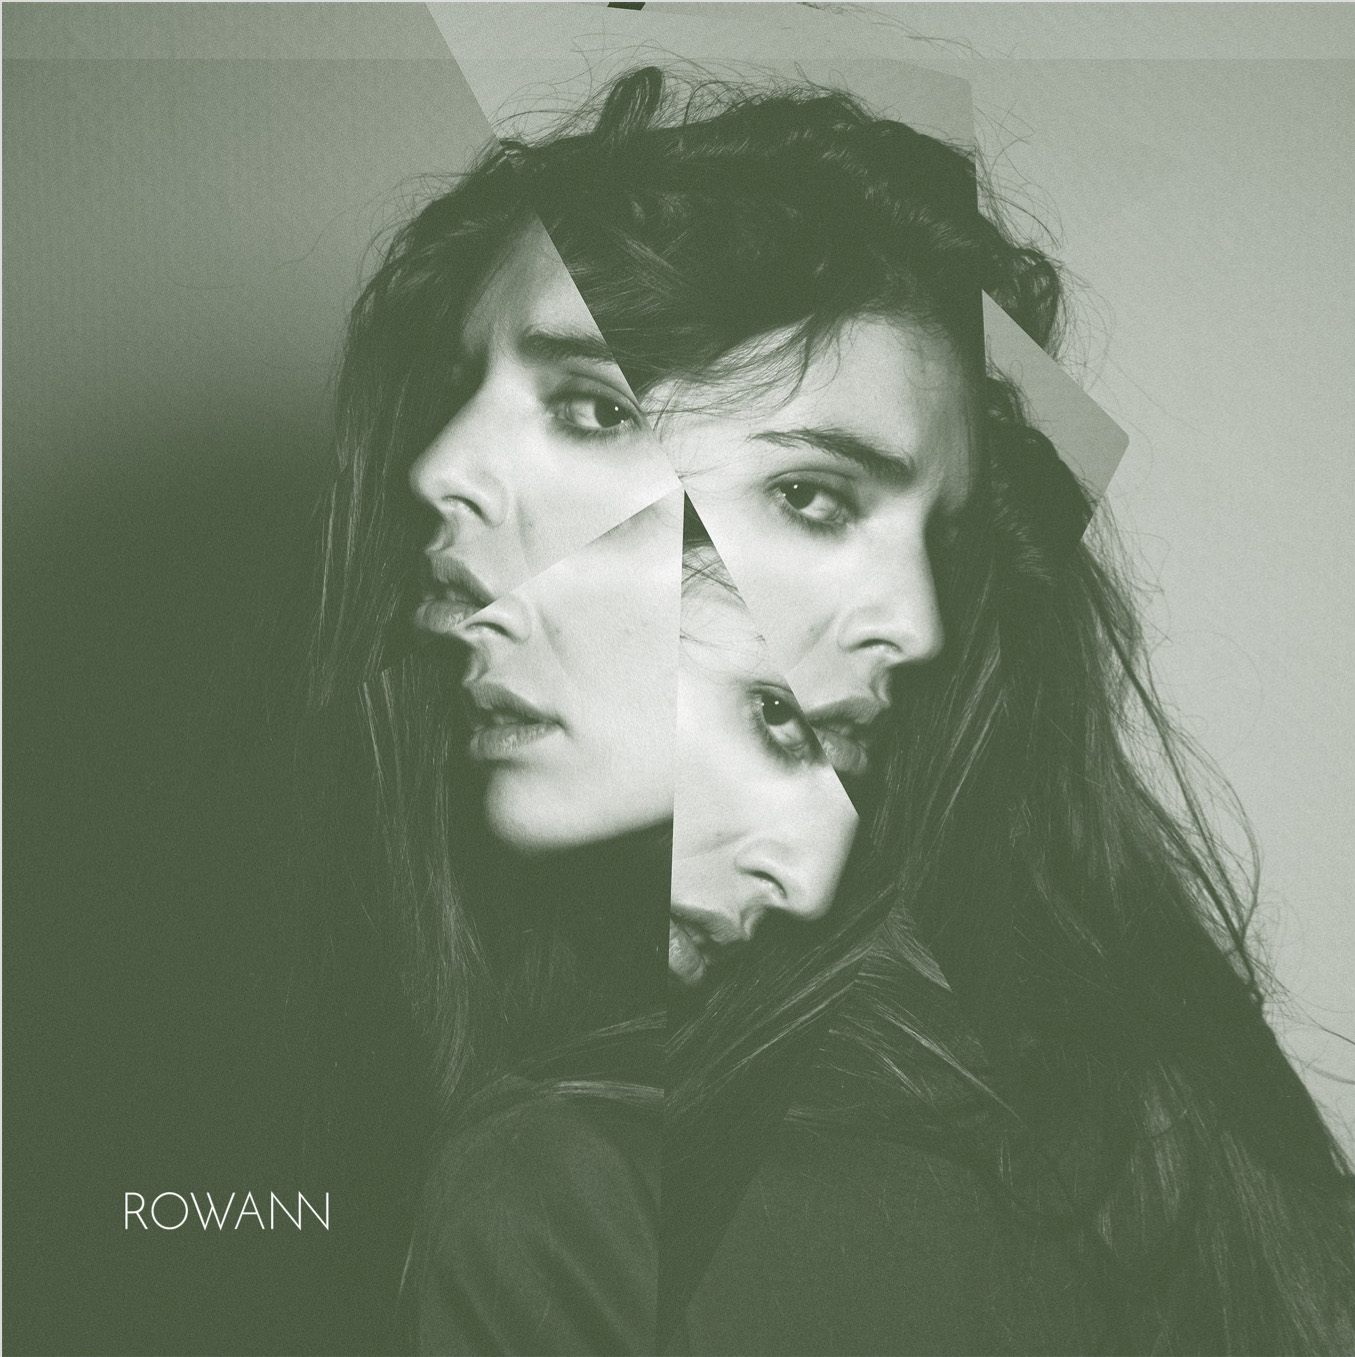 ROWANN